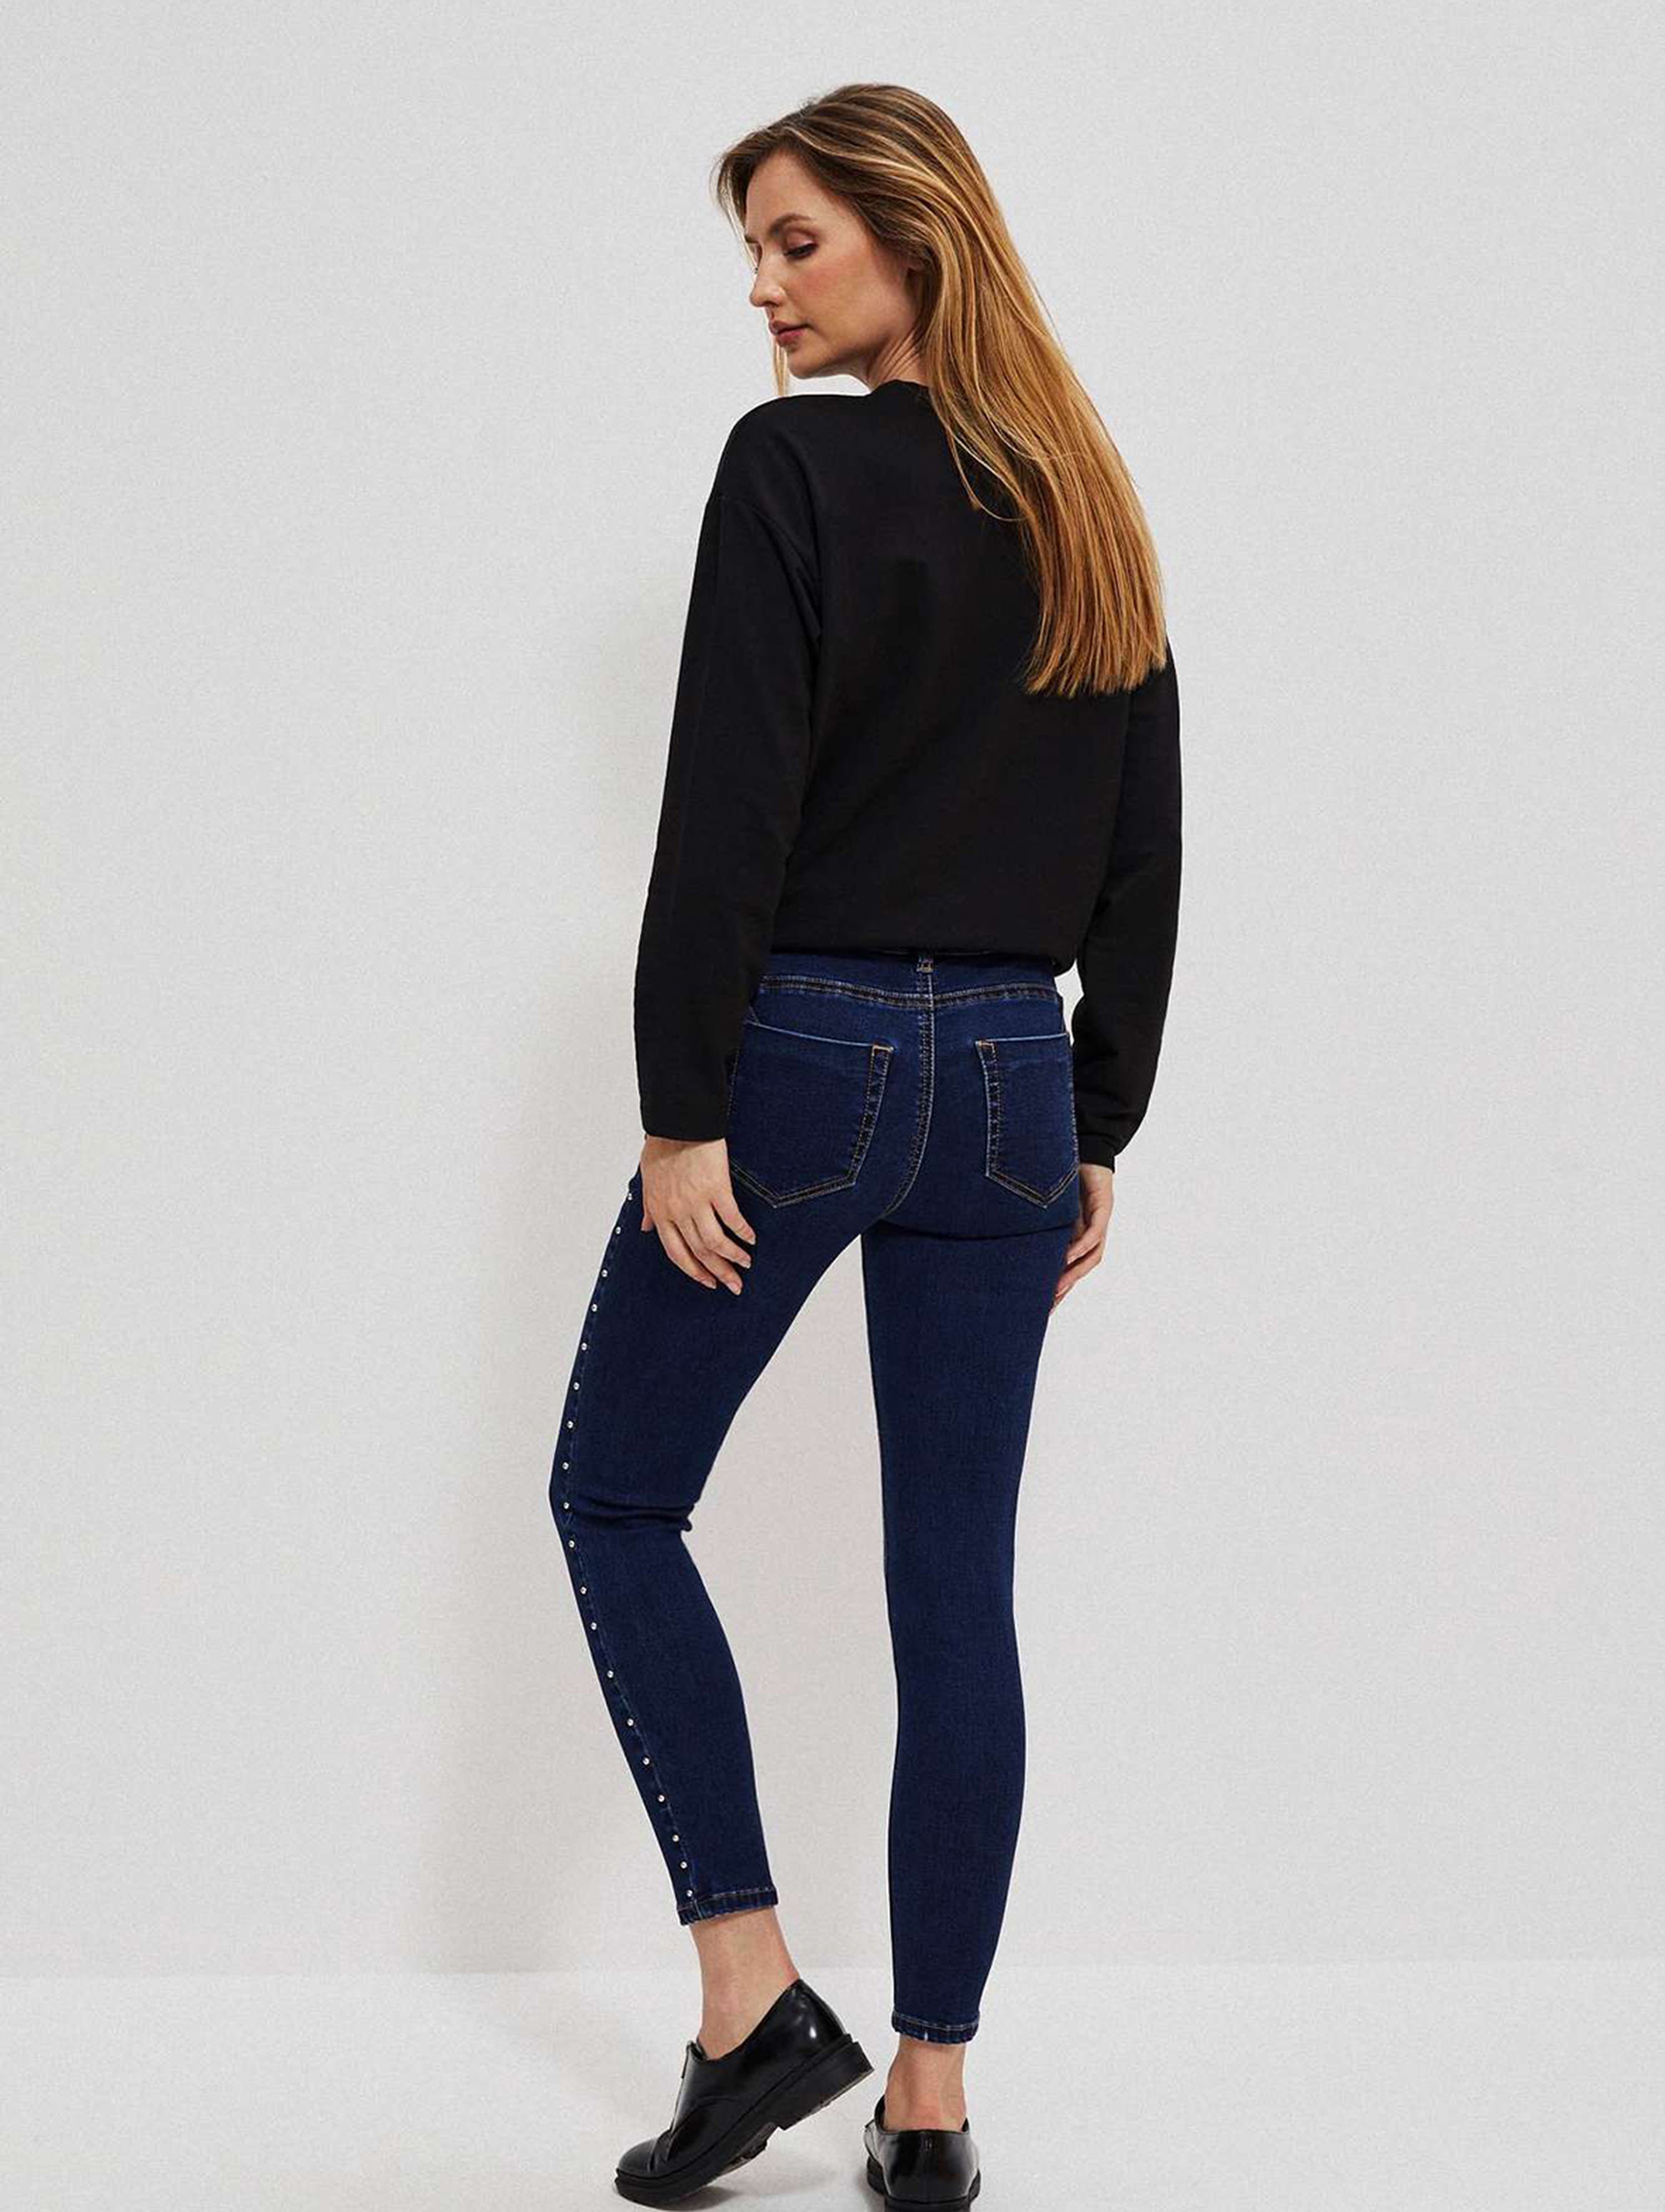 Granatowe spodnie damskie jeansowe rurki z dżetami